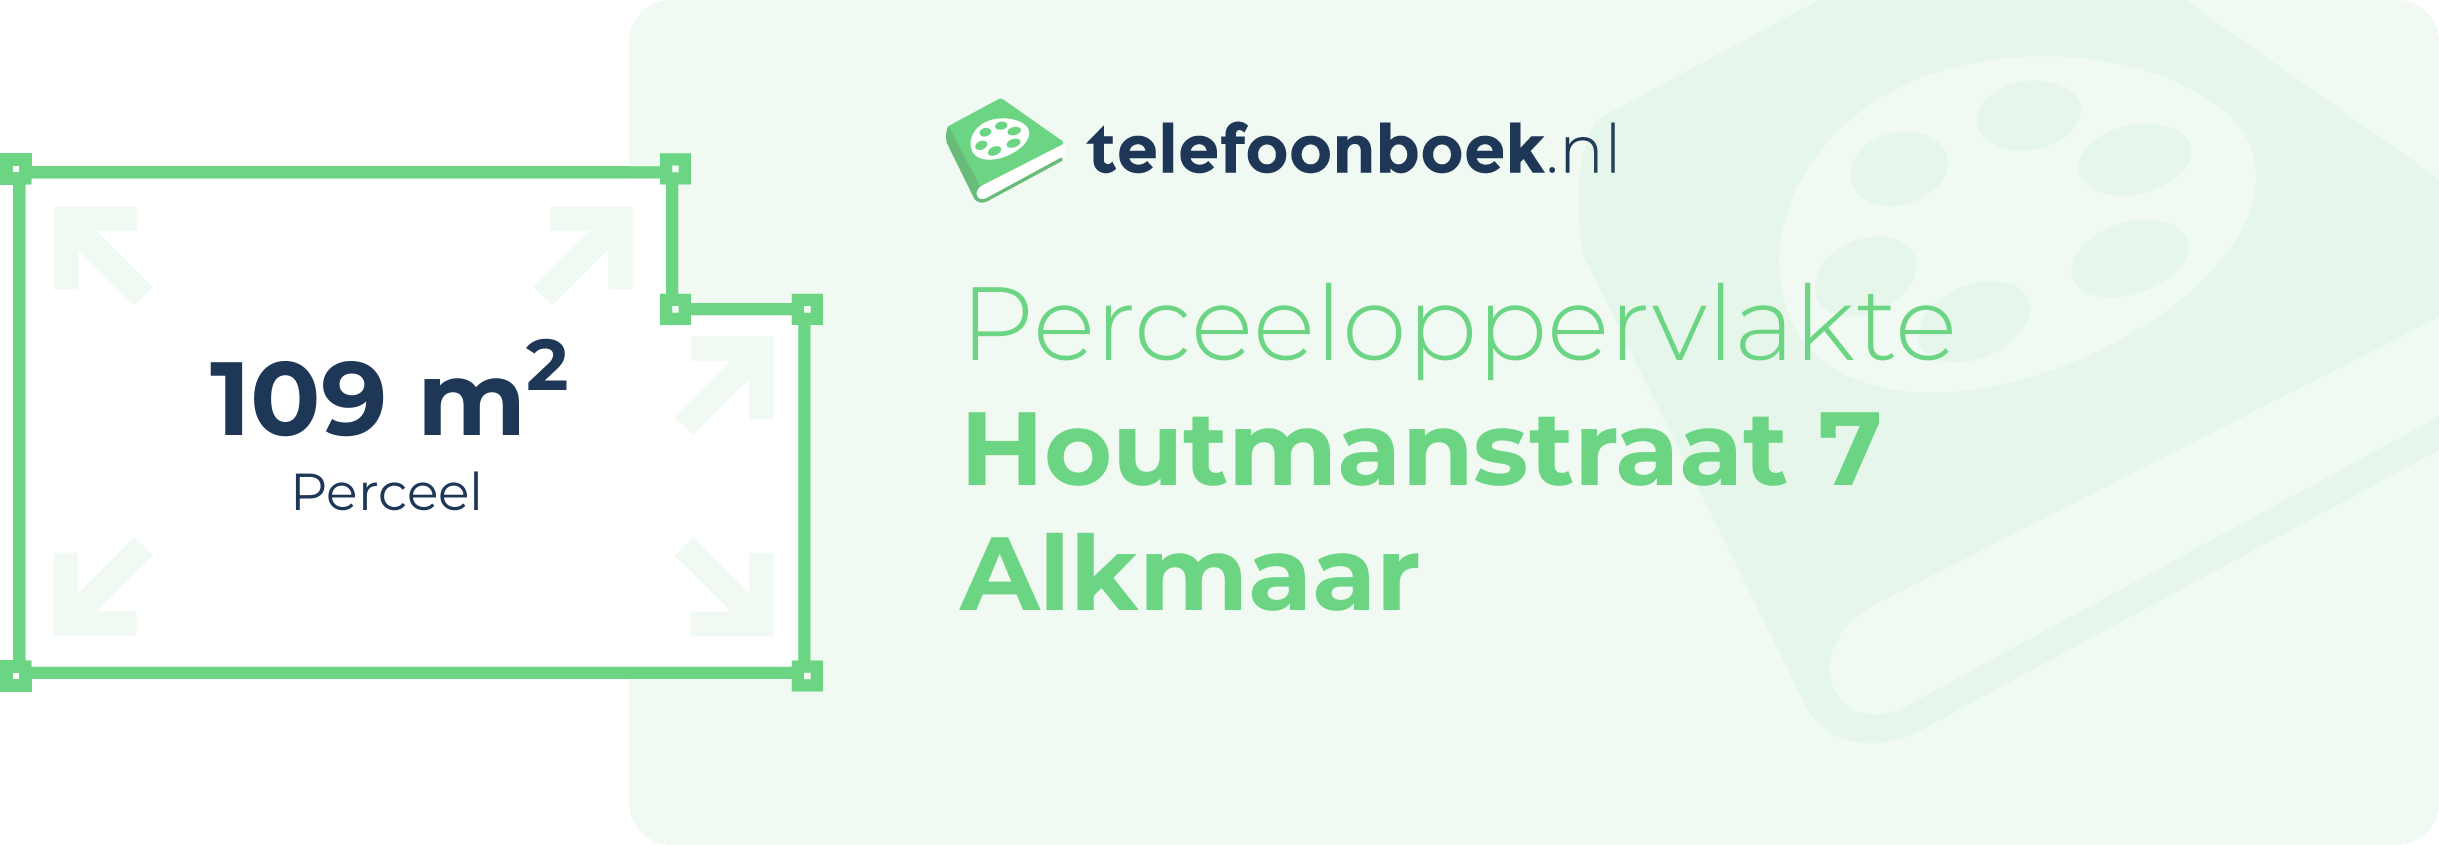 Perceeloppervlakte Houtmanstraat 7 Alkmaar